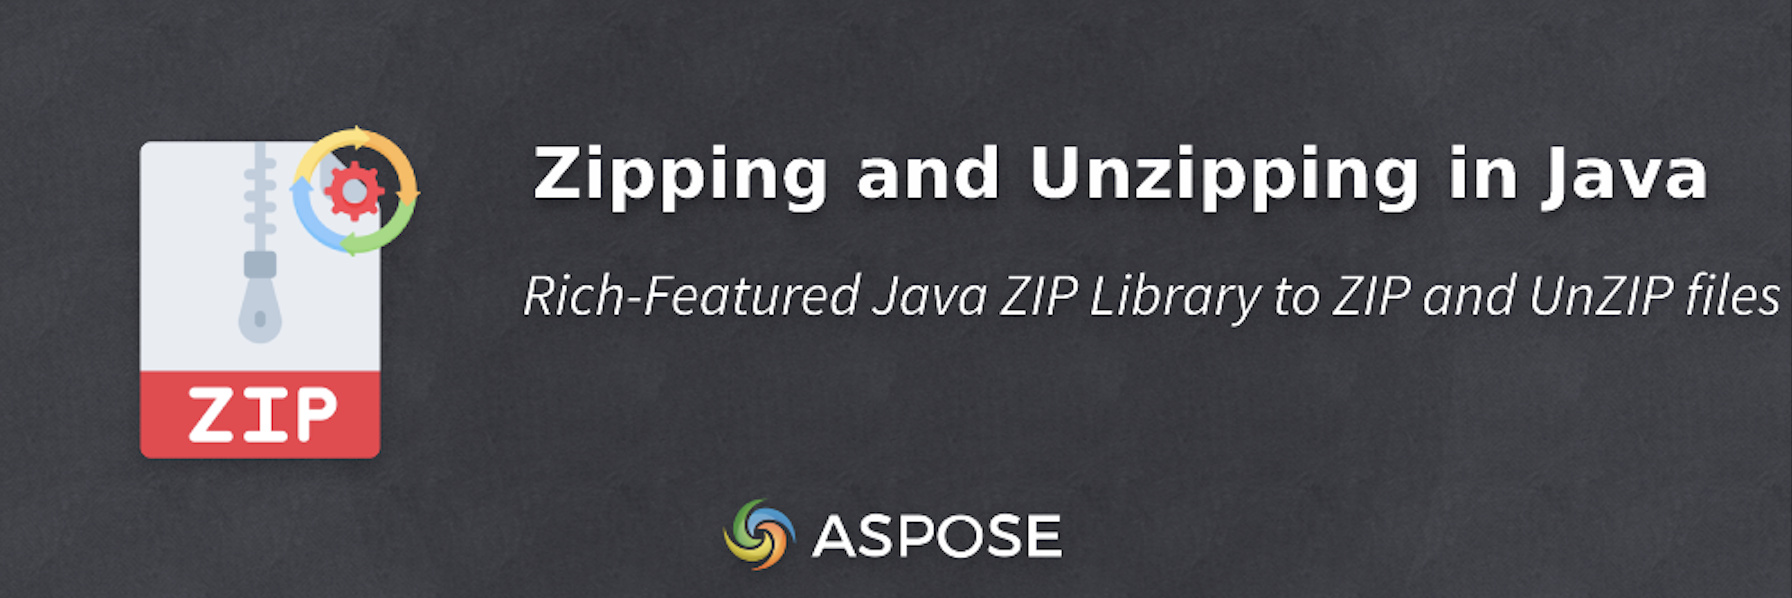 Zippa och packa upp i Java - Java ZIP Library